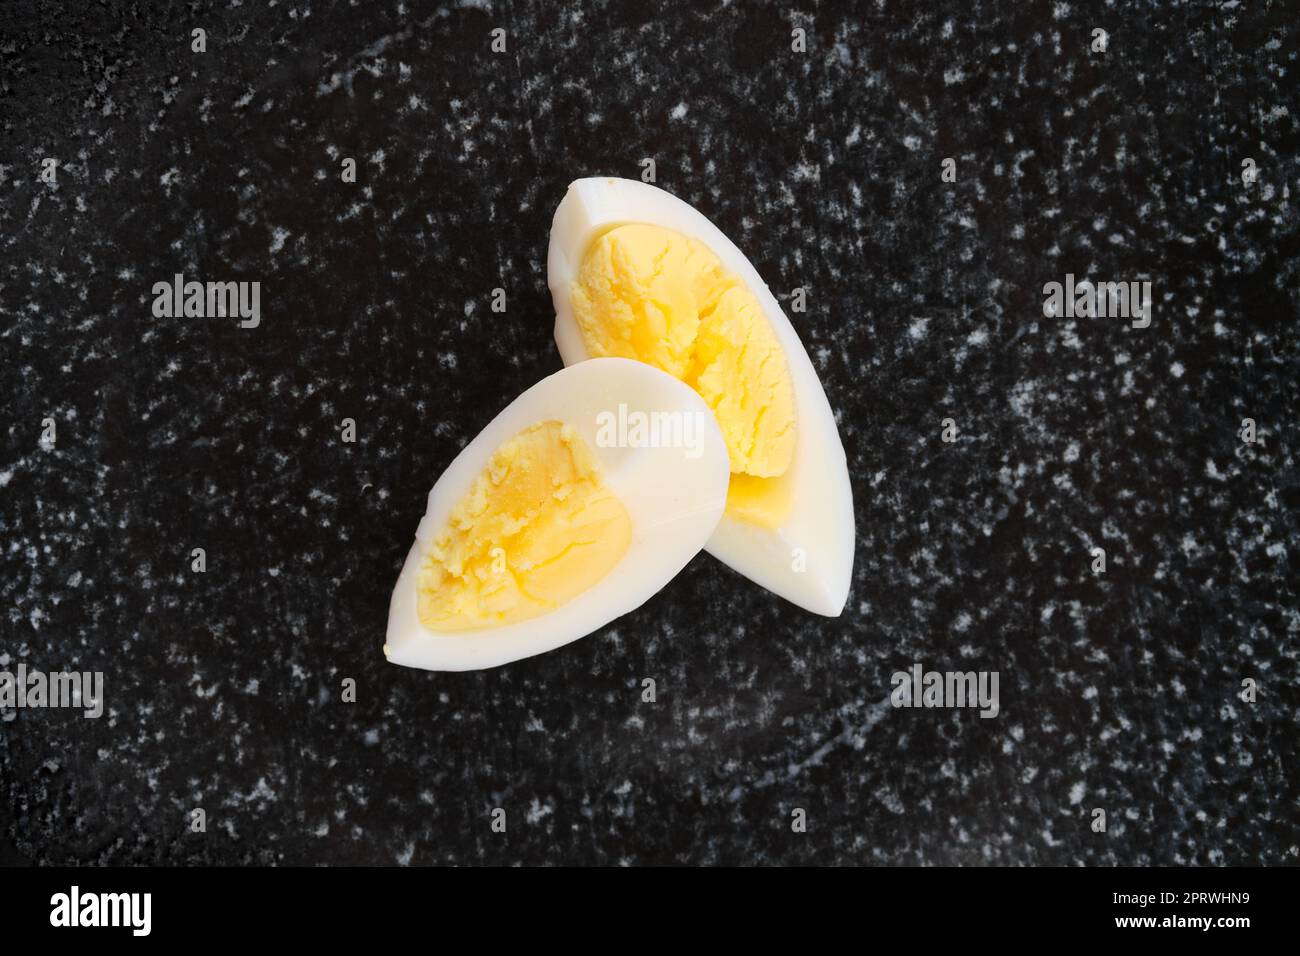 Übersichtsansicht der Hälfte des gekochten Eies, die auf zwei Stücke geschnitten wurde Stockfoto